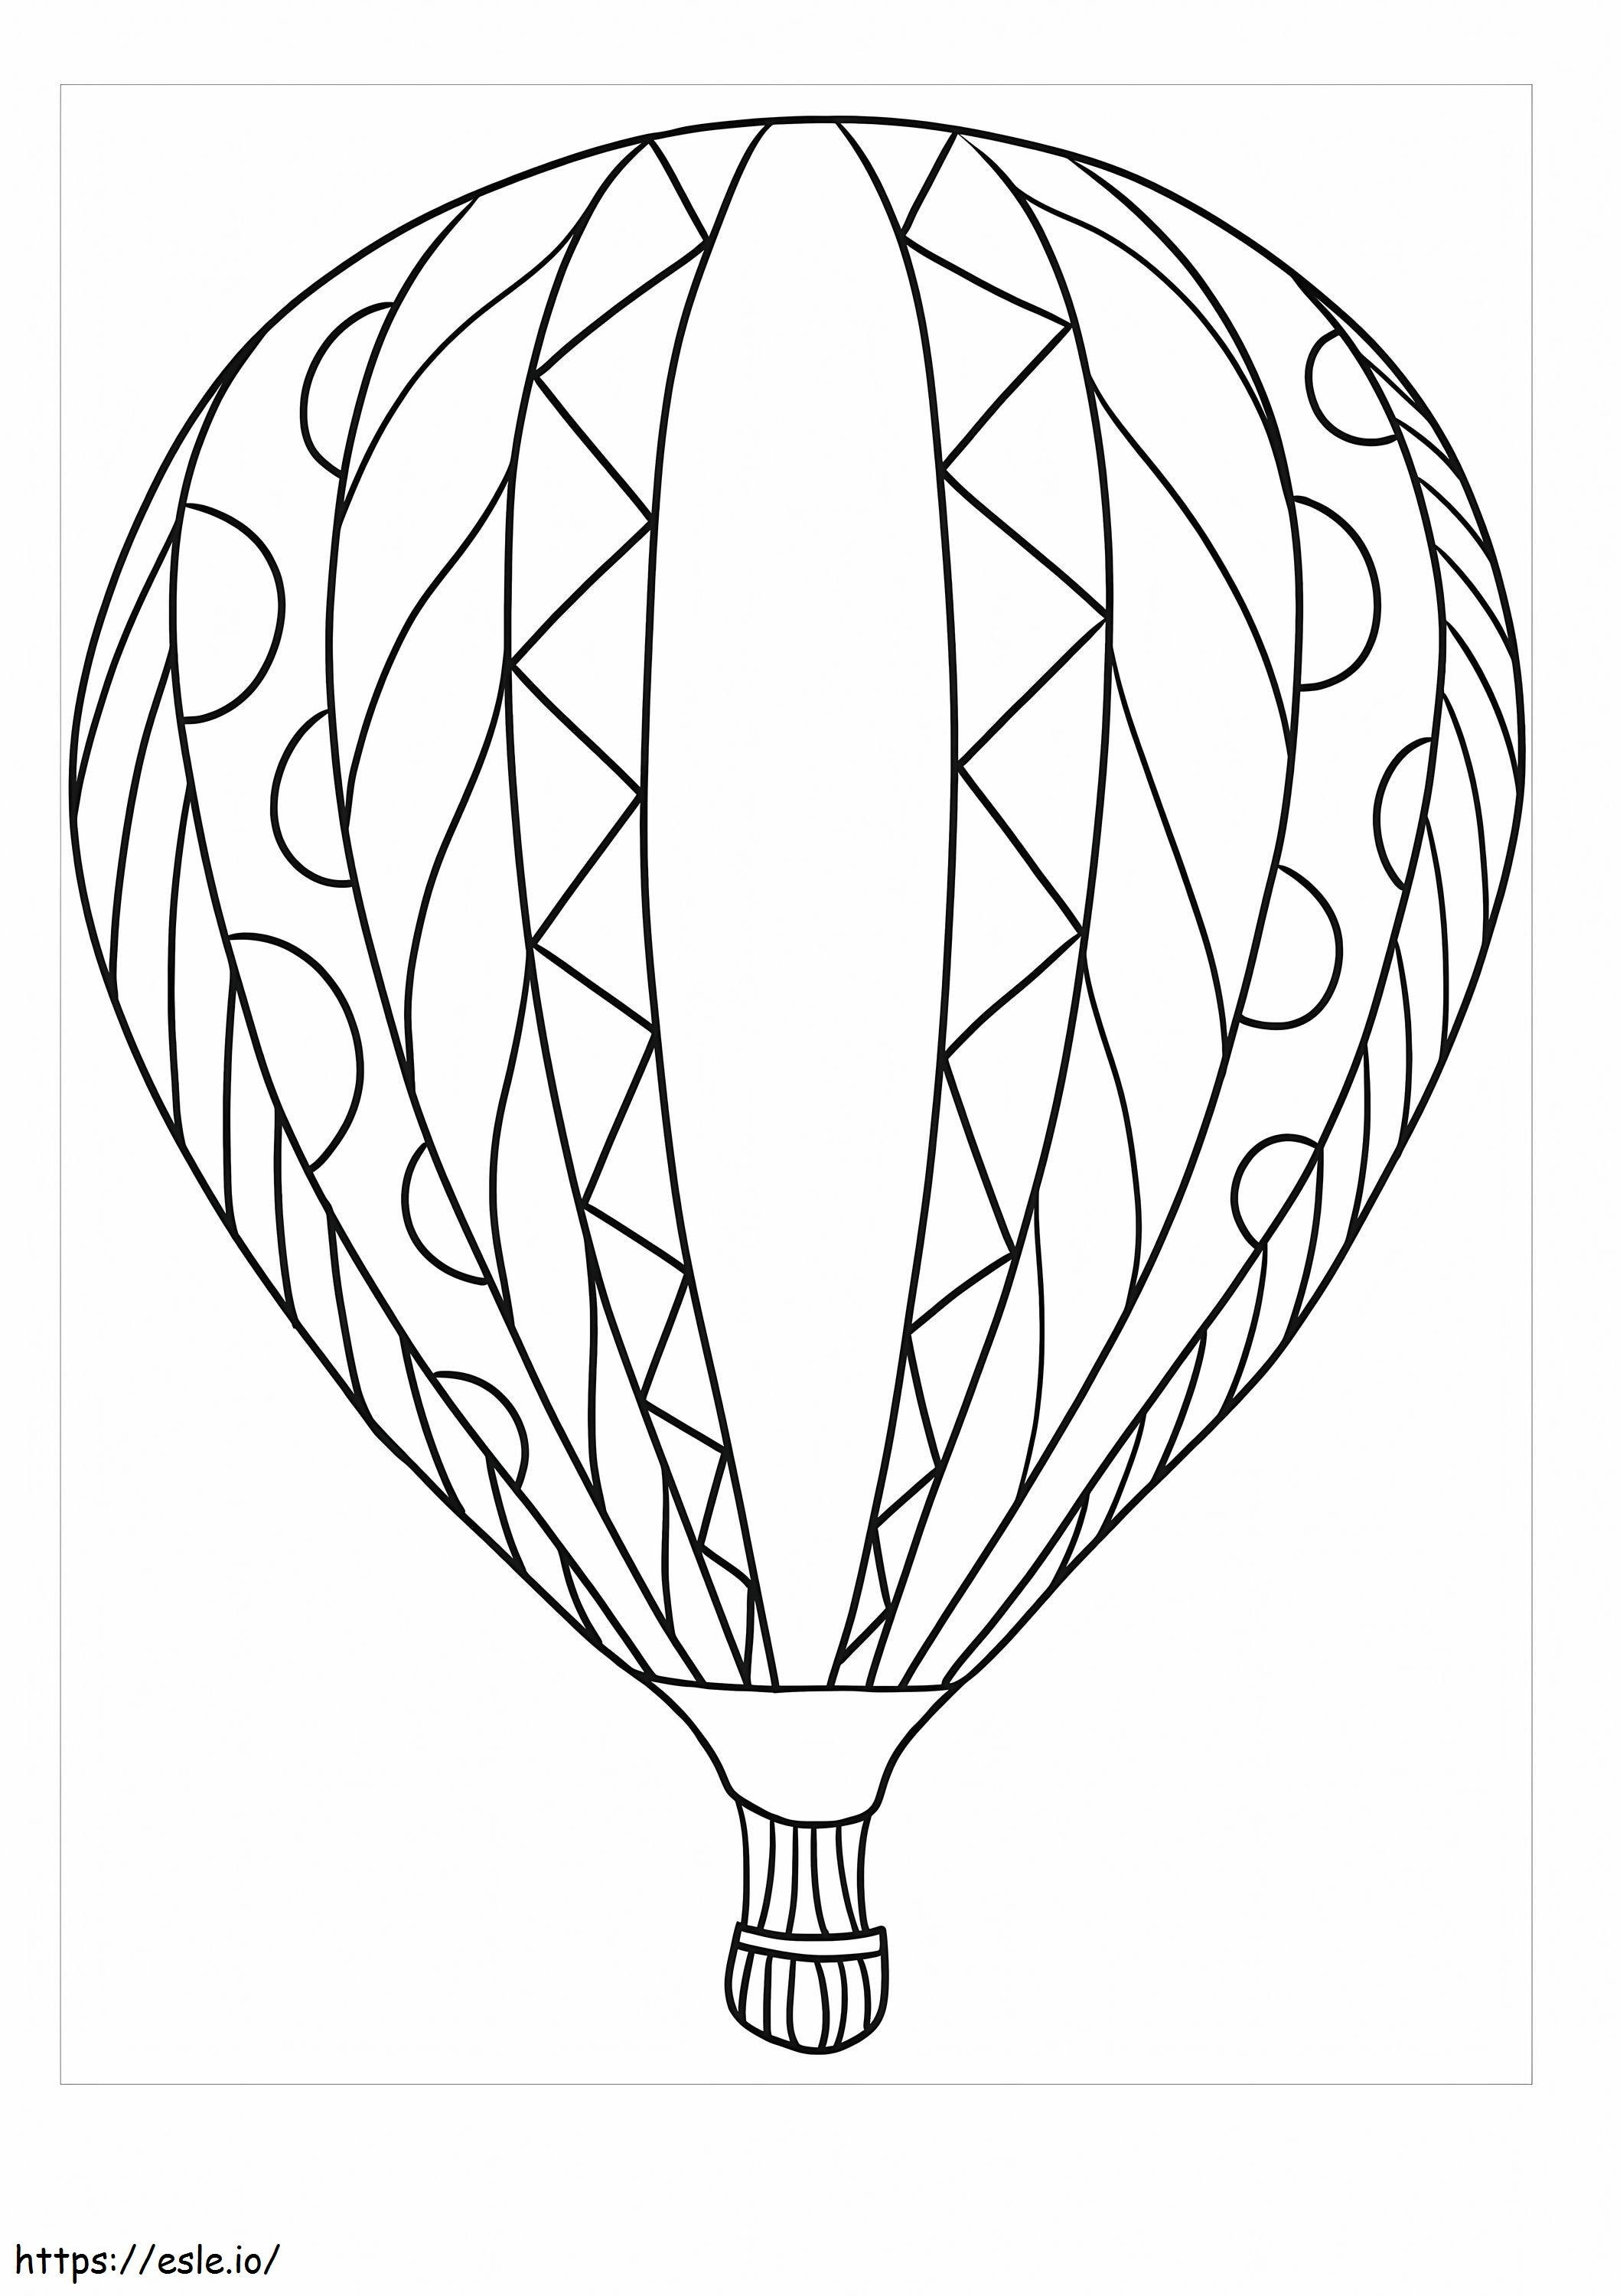 Balon cu aer cald pentru adulți de colorat